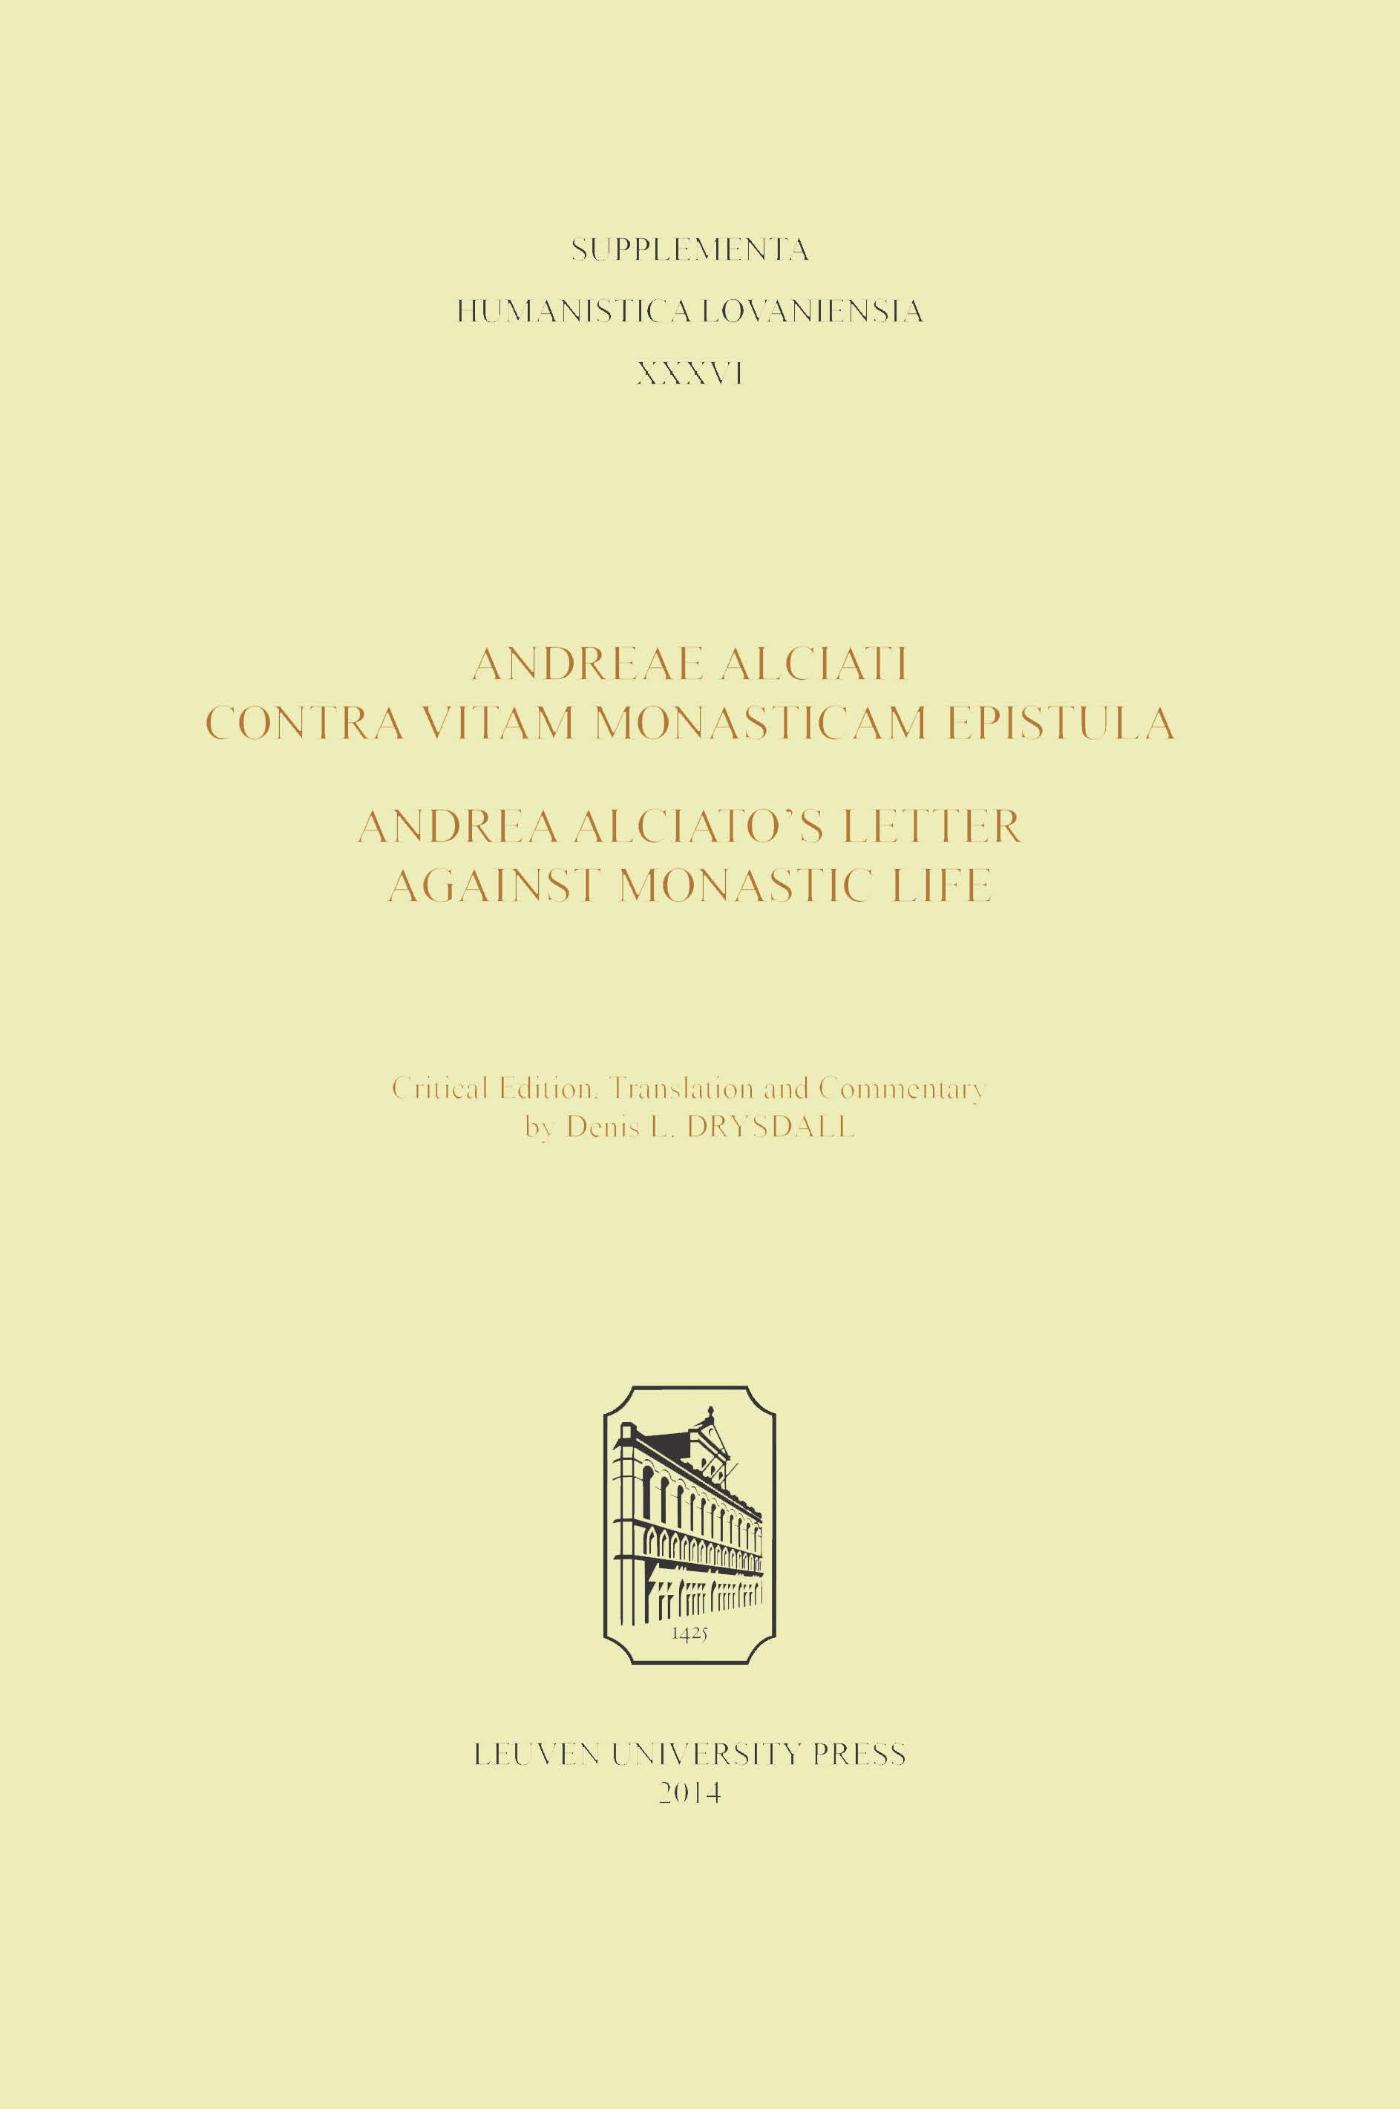 Andreae Alciati Contra vitam monasticam epistula - Andrea Alciatos Letter against monastic life (Ebook)